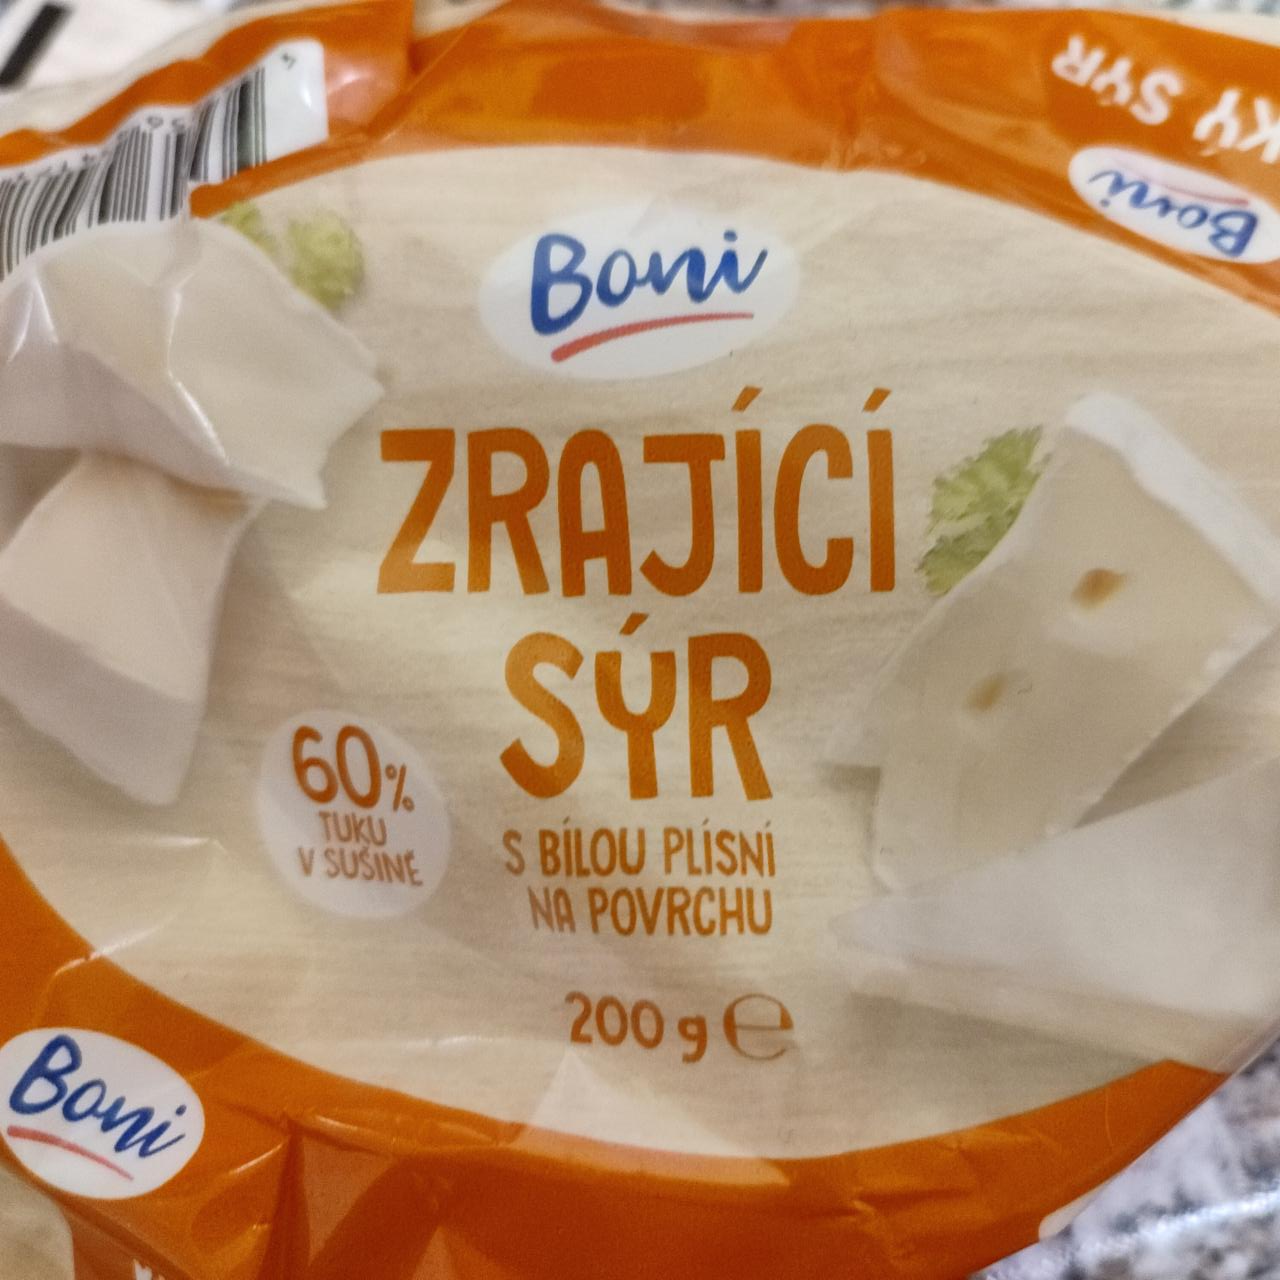 Fotografie - Zrající sýr s bílou plísní na povrchu Boni